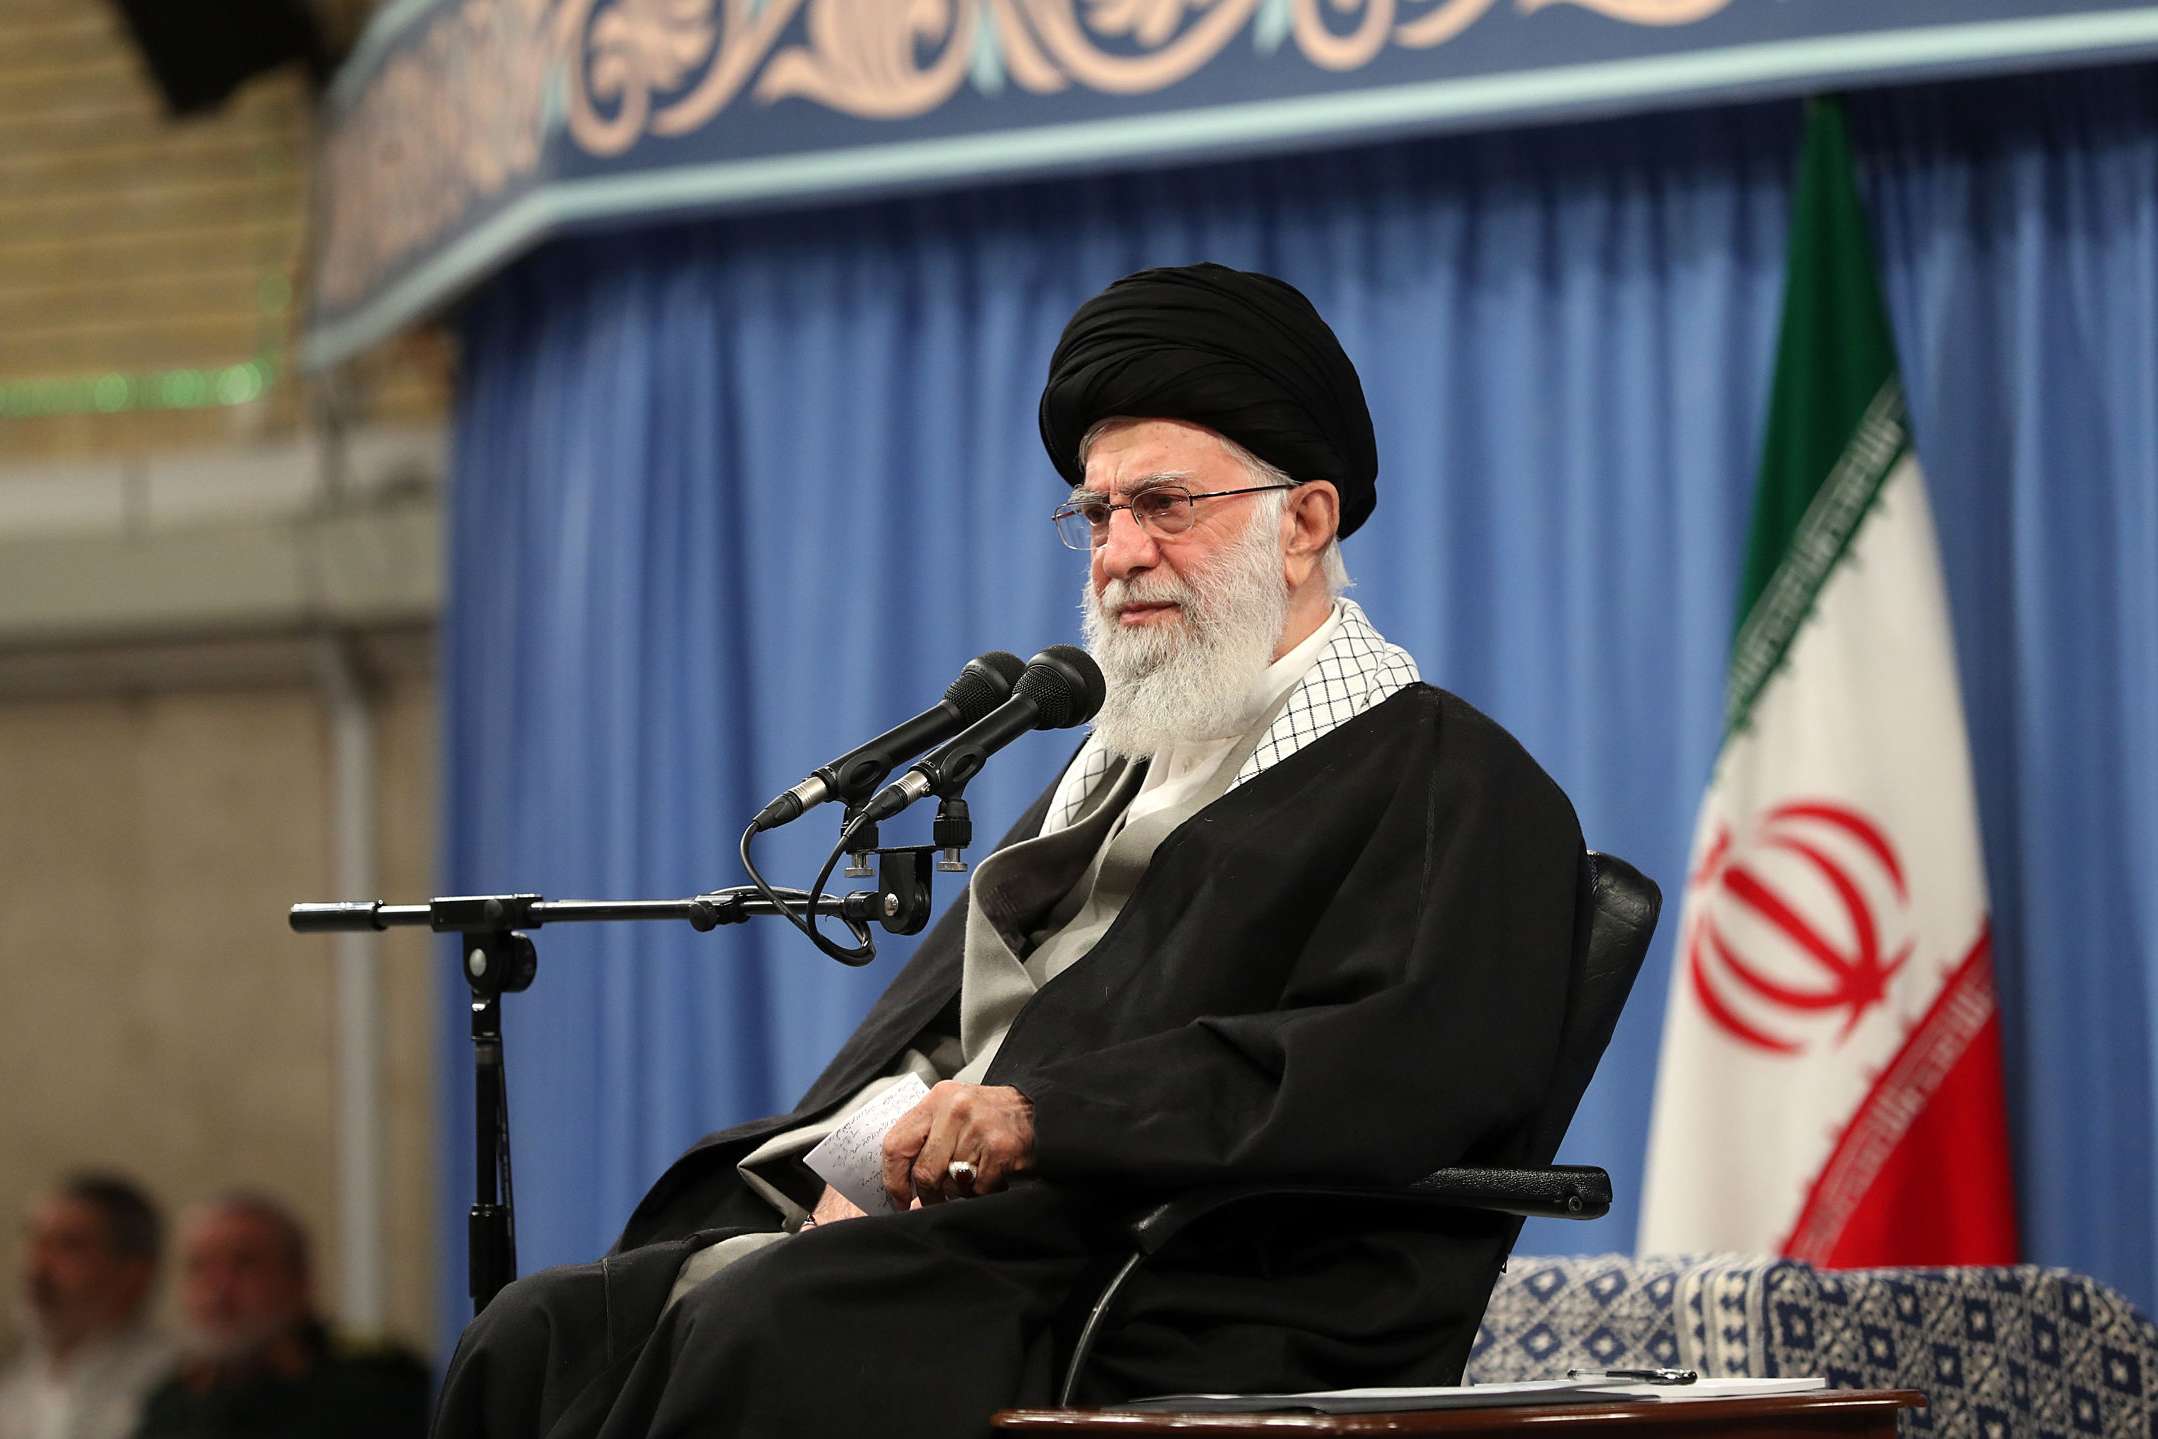 هزيمة ثقيلة لمرشد ايران اذا كان الاقبال محدودا في الانتخابات